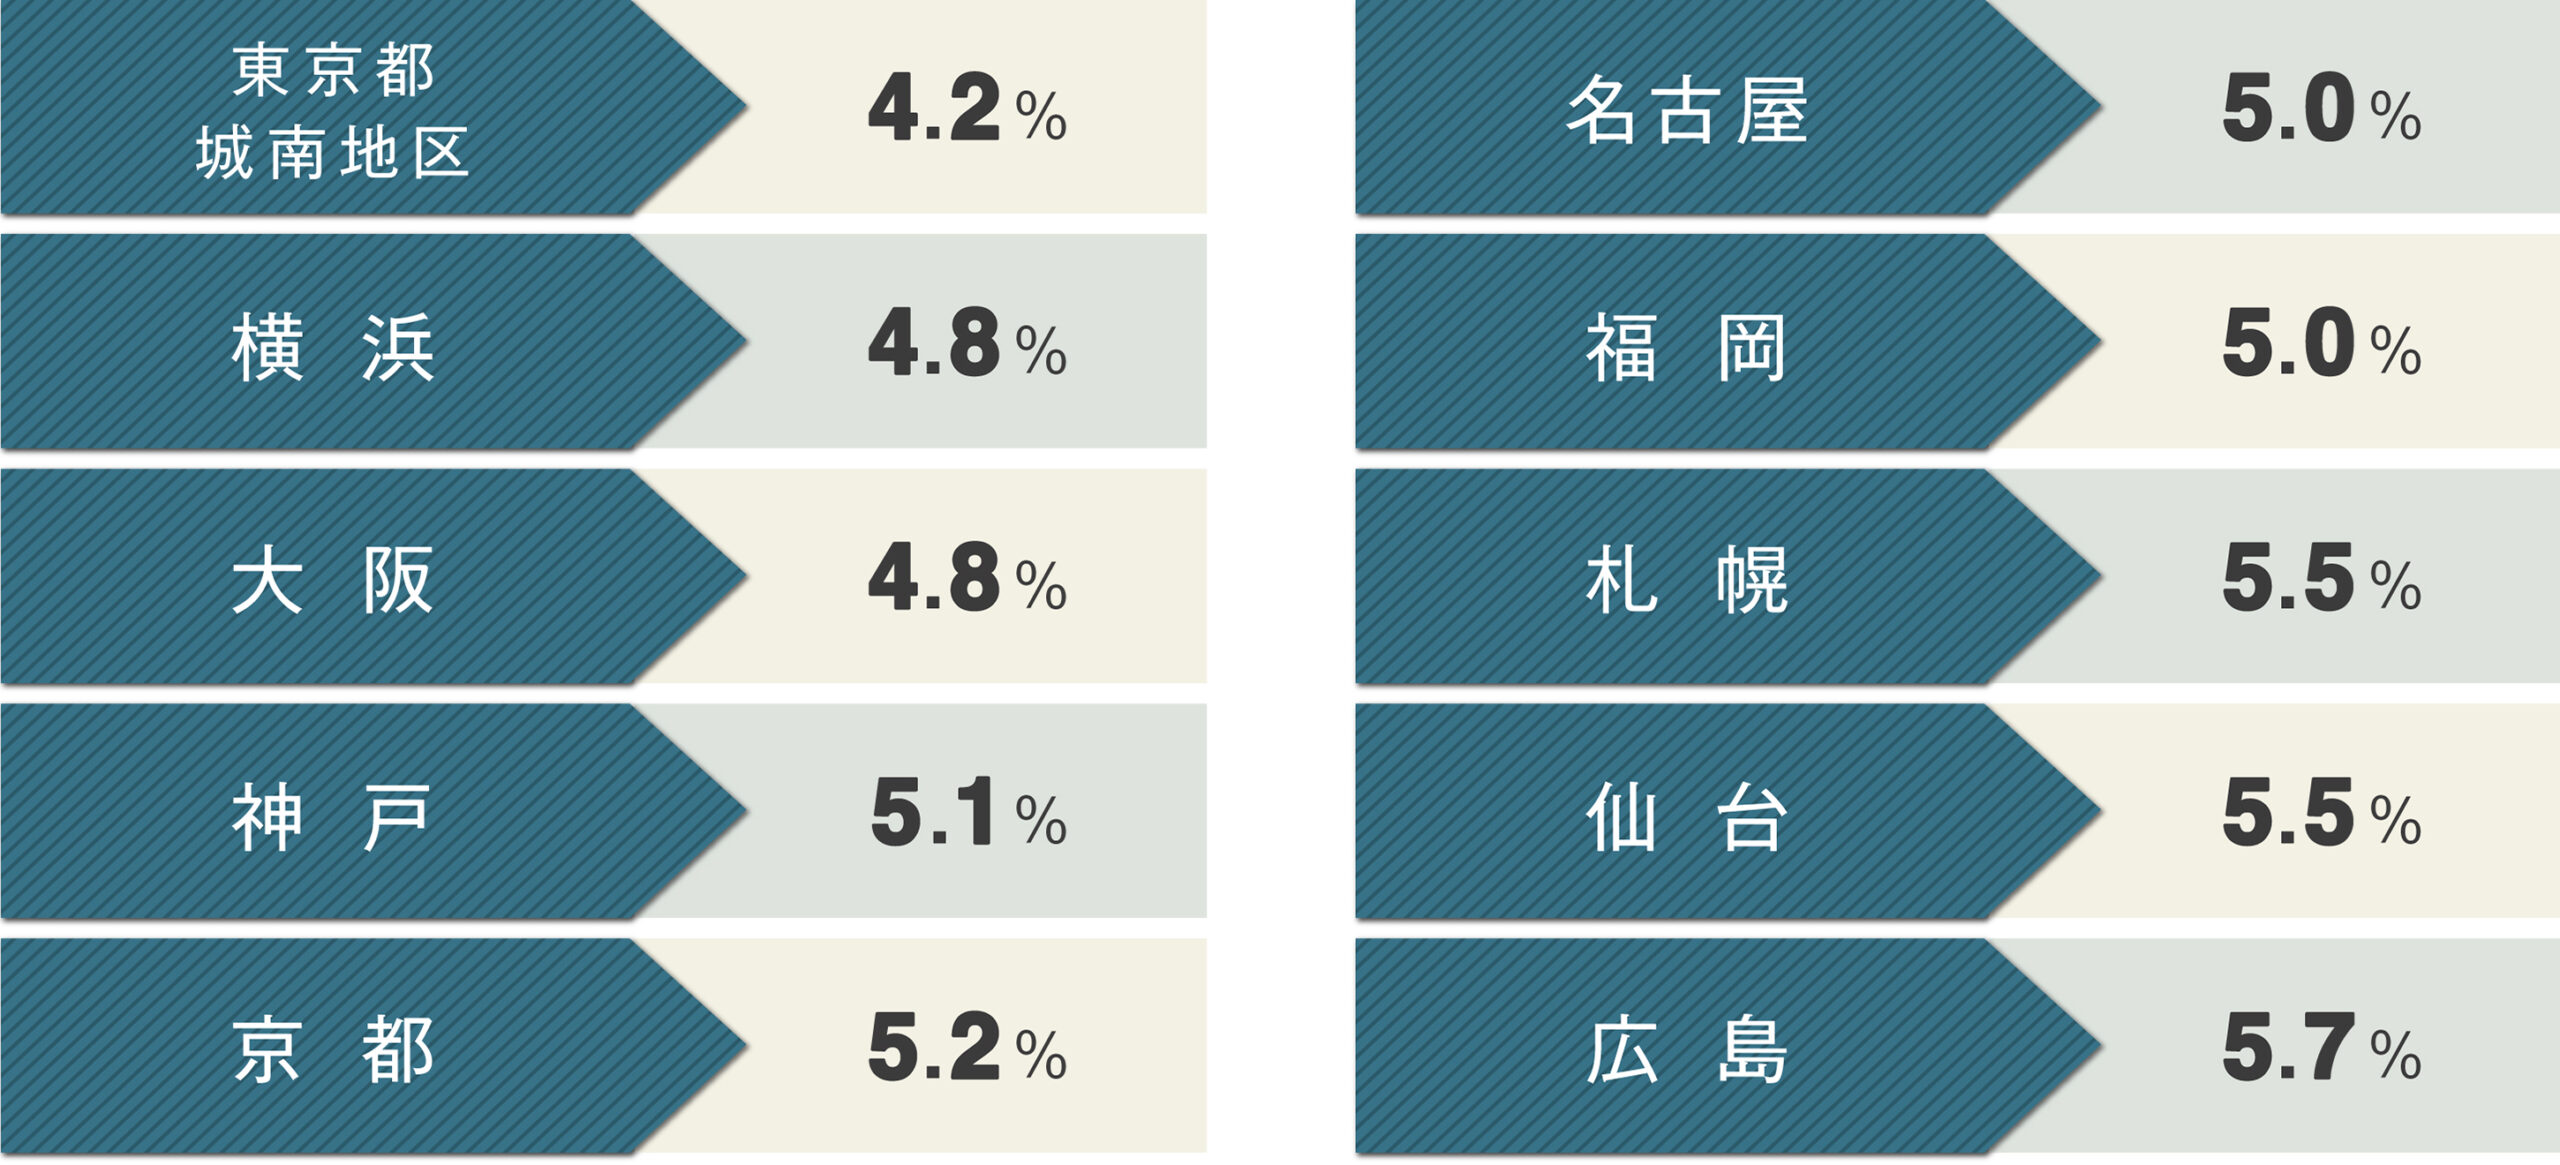  日本不動産研究所による「第44回不動産投資家調査（2021年4月時点）」の結果:賃貸住宅一棟（ワンルームタイプ）